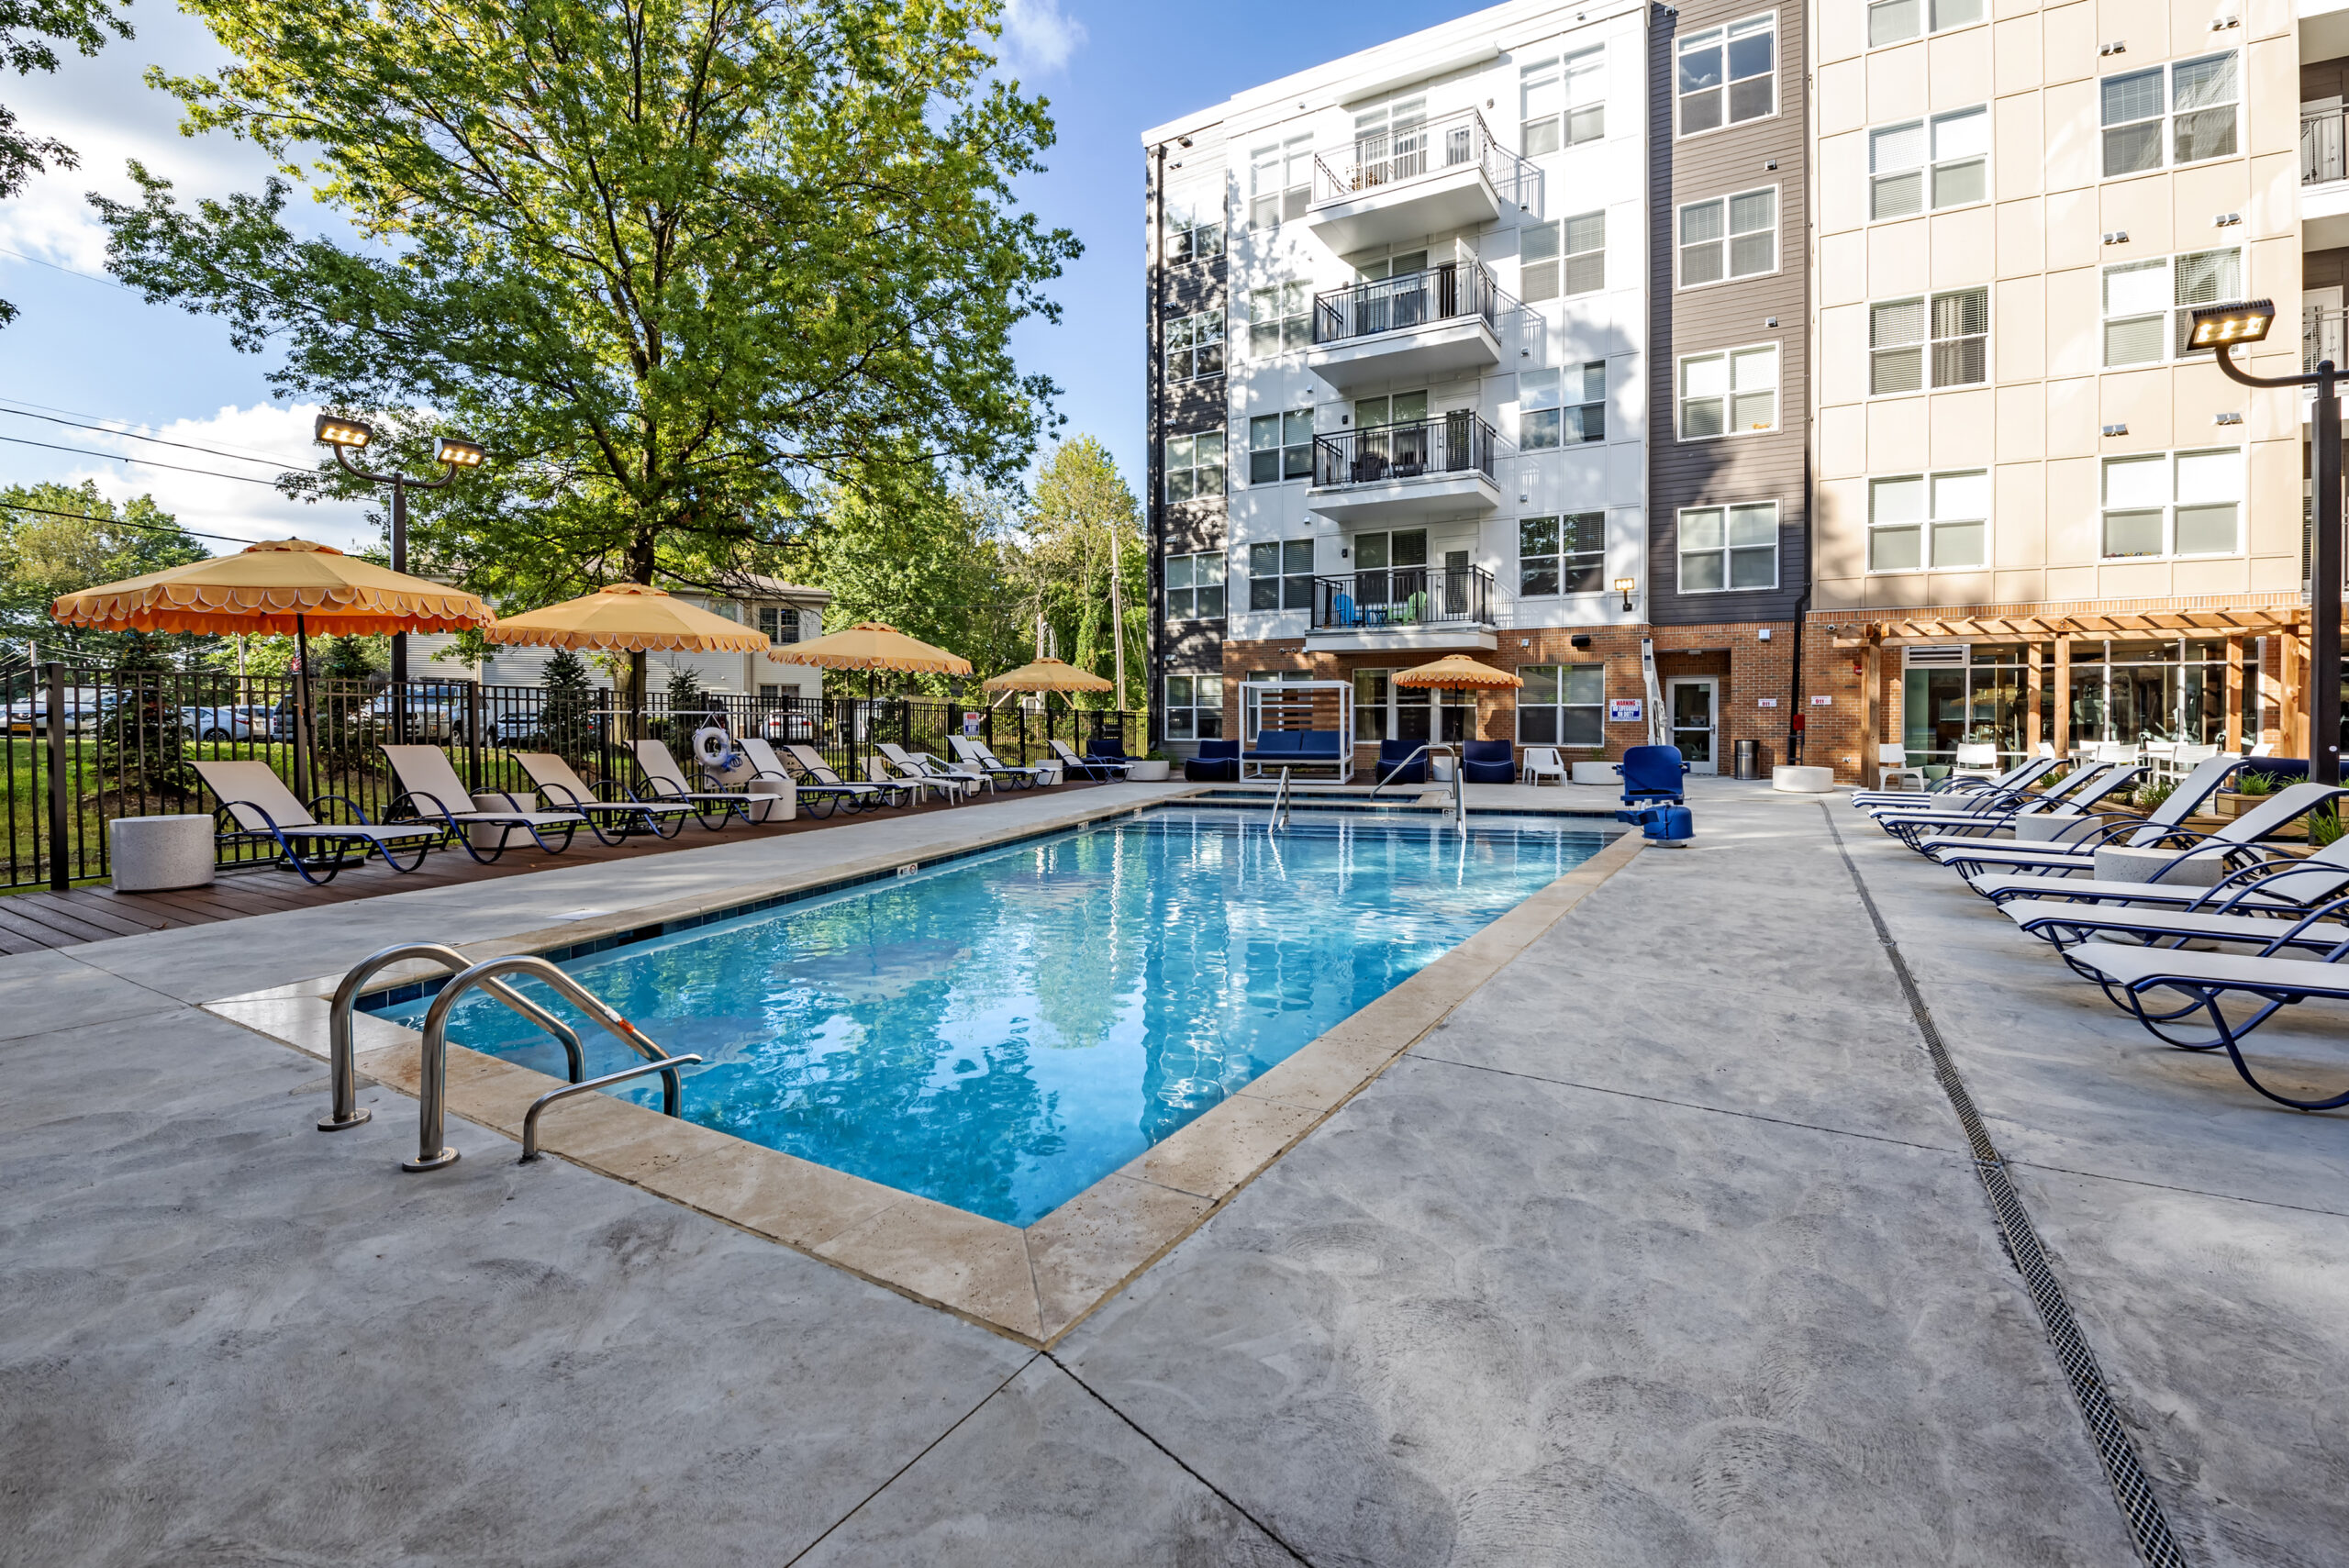 pool area at paloma kent apartments